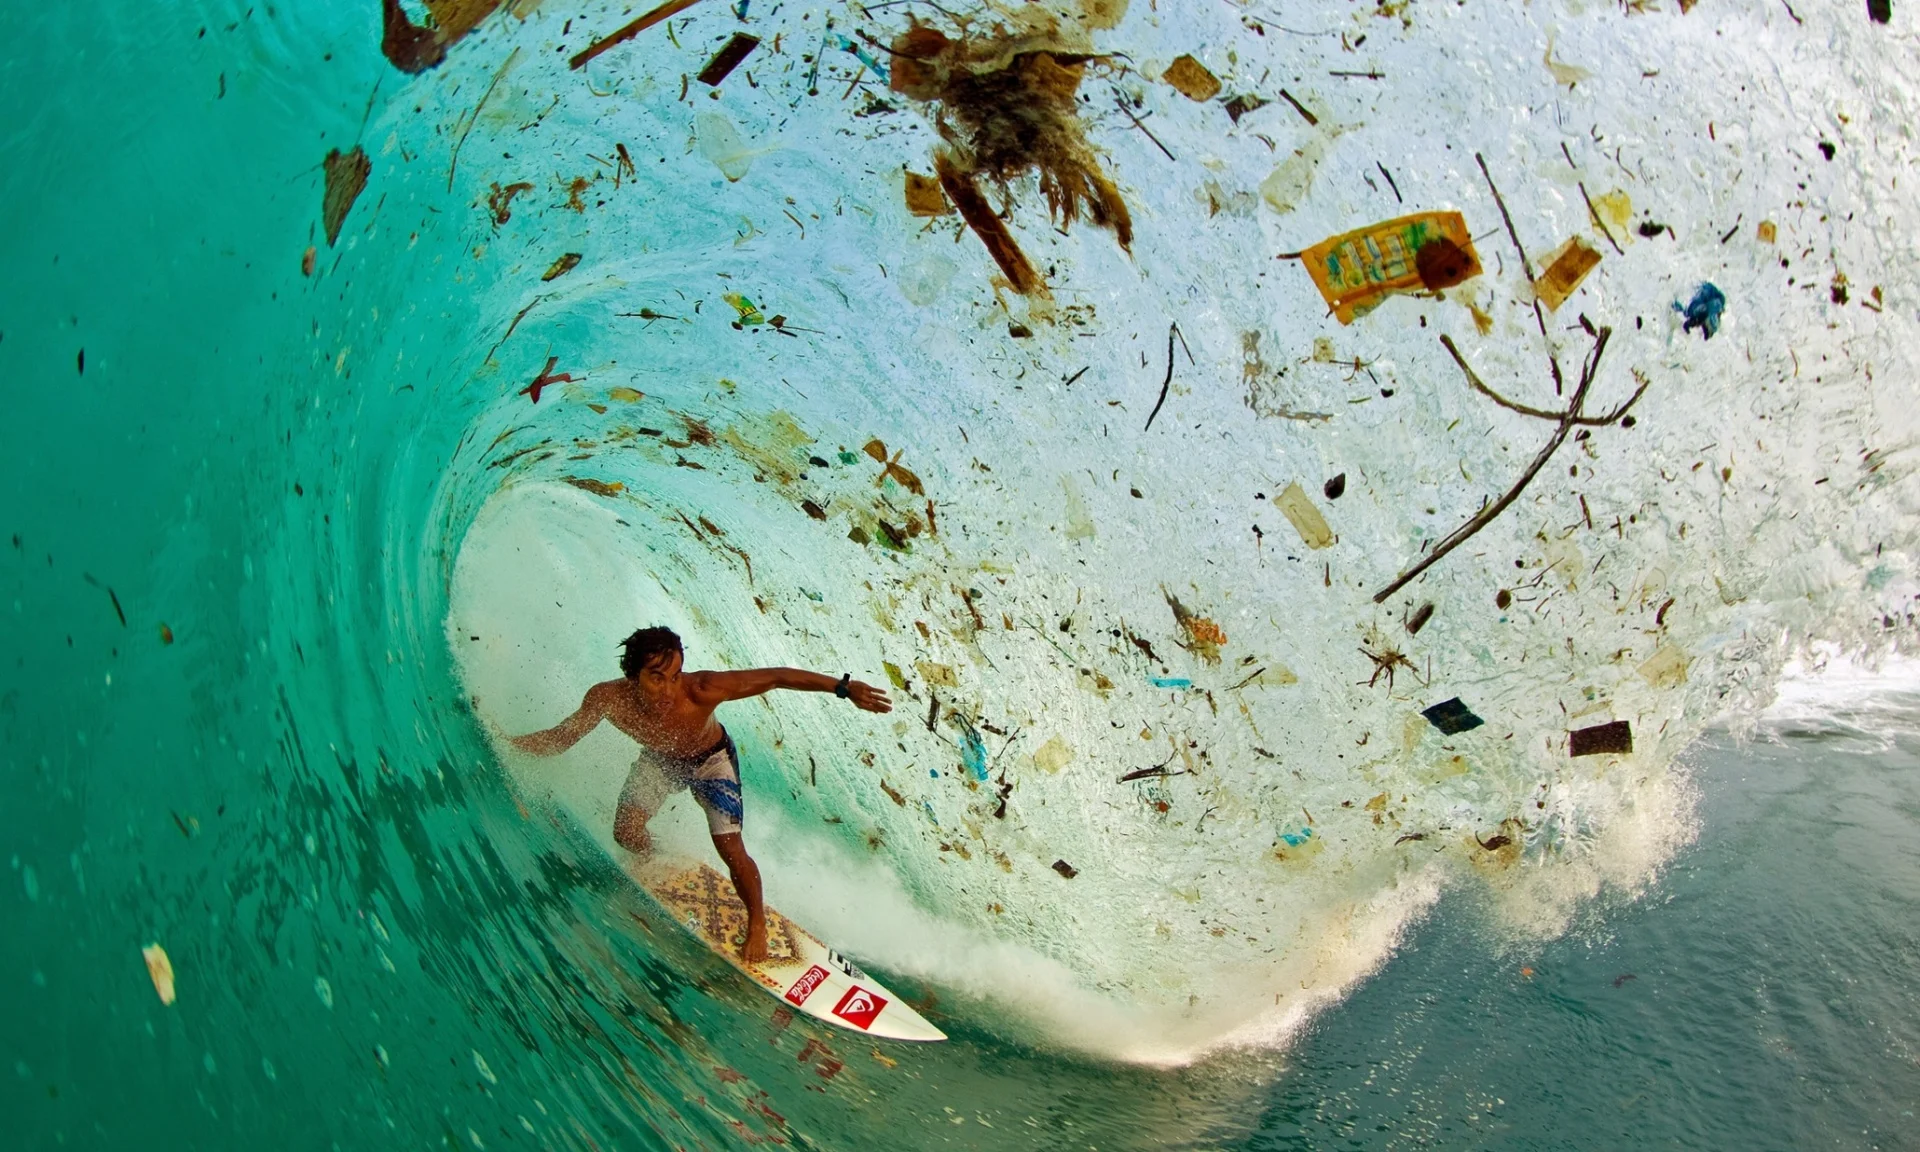 Superpopulação e super consumismo, nossa triste realidade, imagem de onda cheia de lixo